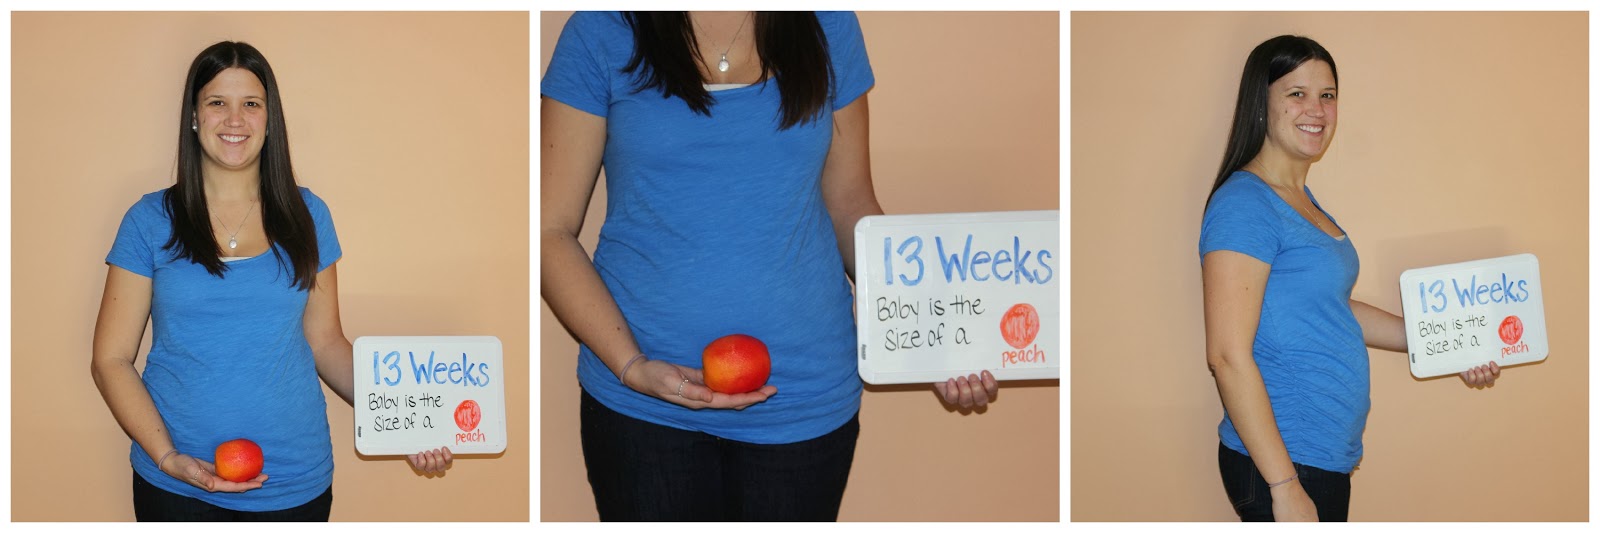 13 неделя даты. 13 Я неделя беременности. Размер ребенка в 13 недель. Фото беременных 13 недель.